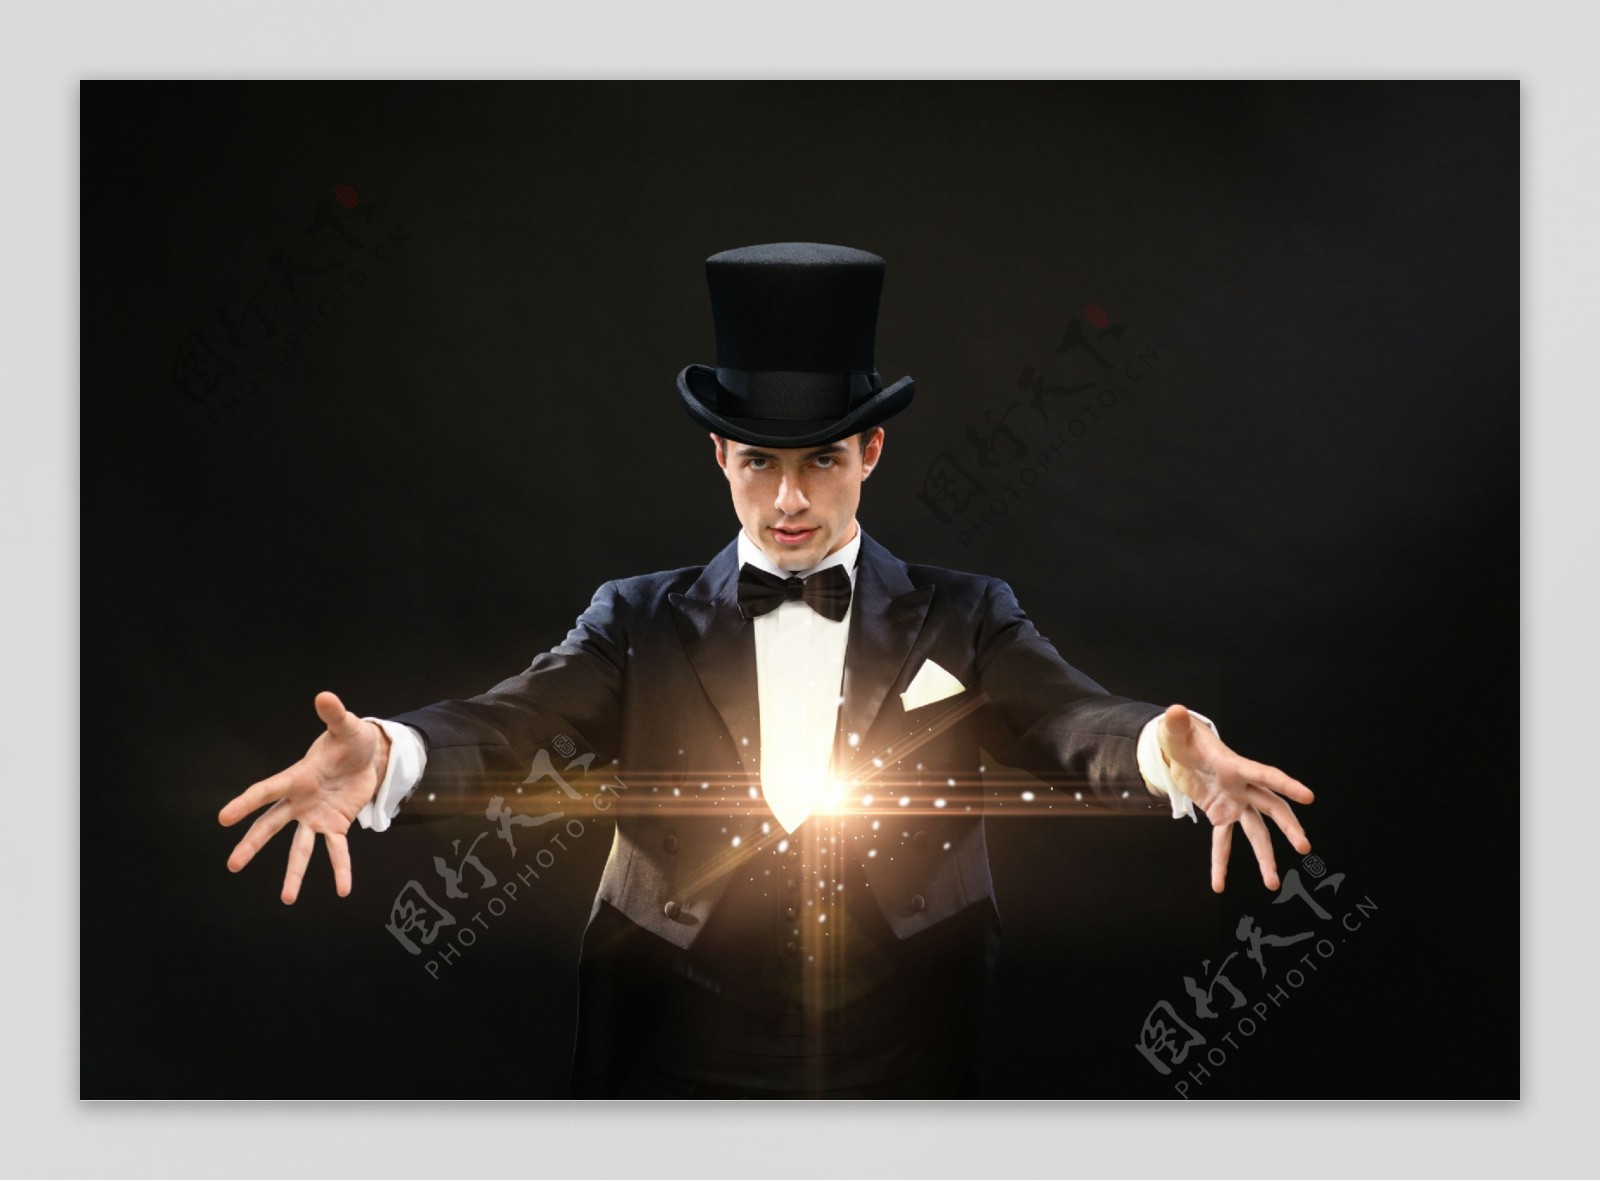 魔术演出图片大全-魔术演出高清图片下载-觅知网